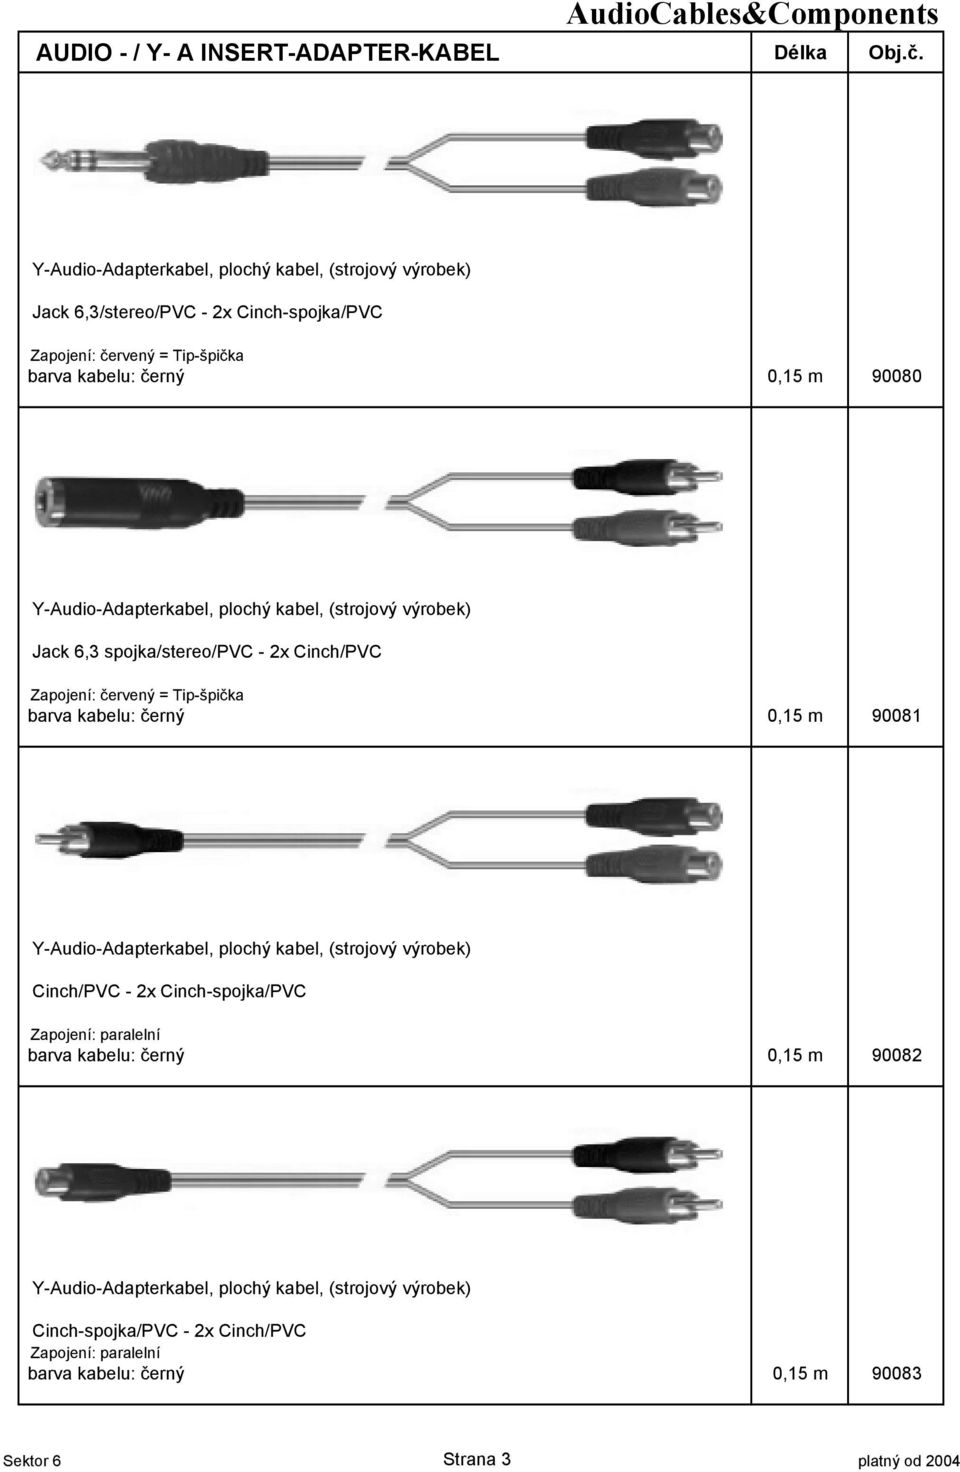 Y-Audio-Adapterkabel, plochý kabel, (strojový výrobek) Jack 6,3 spojka/stereo/pvc - 2x Cinch/PVC Zapojení: $ervený = Tip-špi$ka barva kabelu: $erný 0,15 m 90081